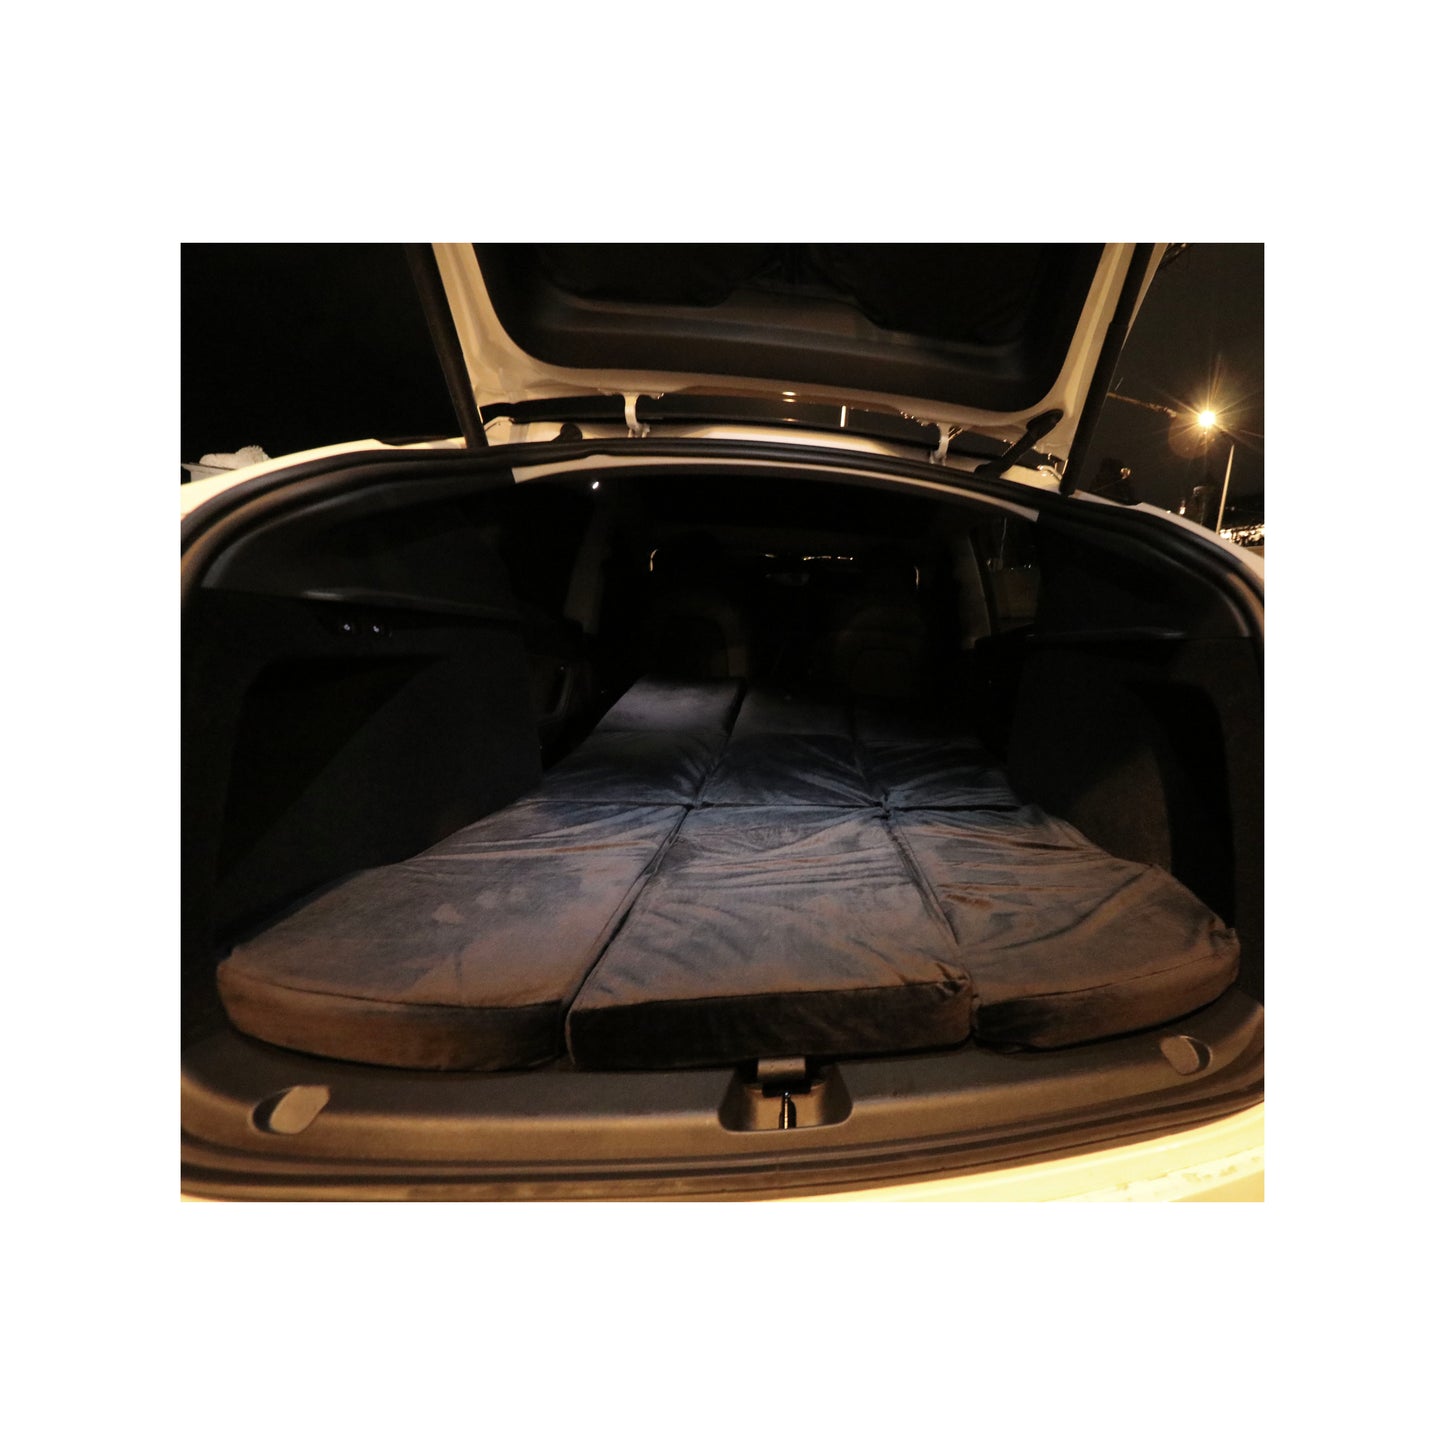 Materasso EV-MATS per Tesla Model Y e la borsa portaoggetti è un materasso premium in memory foam, si adatta perfettamente alle dimensioni della Tesla Model Y, offre un comfort perfetto per dormire e può essere riposto nel bagagliaio